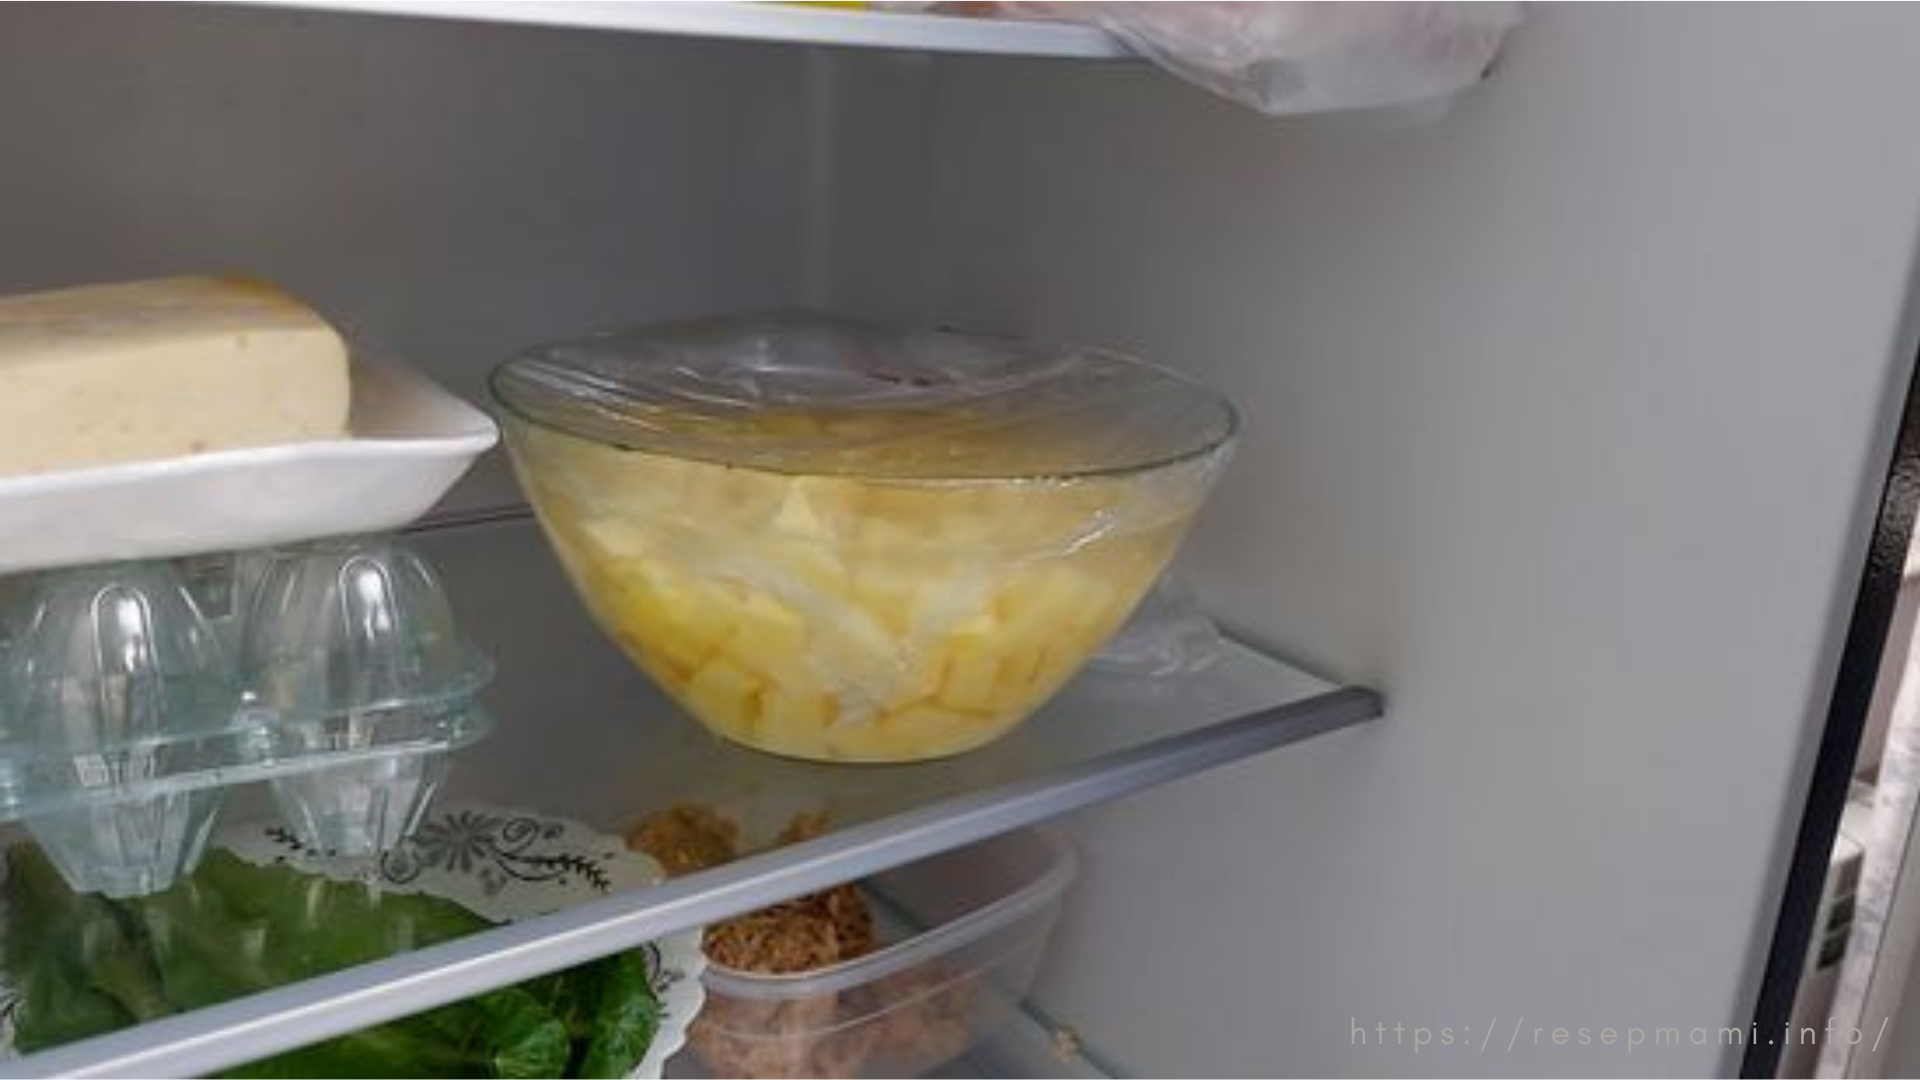 cara menyimpan kentang yang sudah dikupas di kulkas